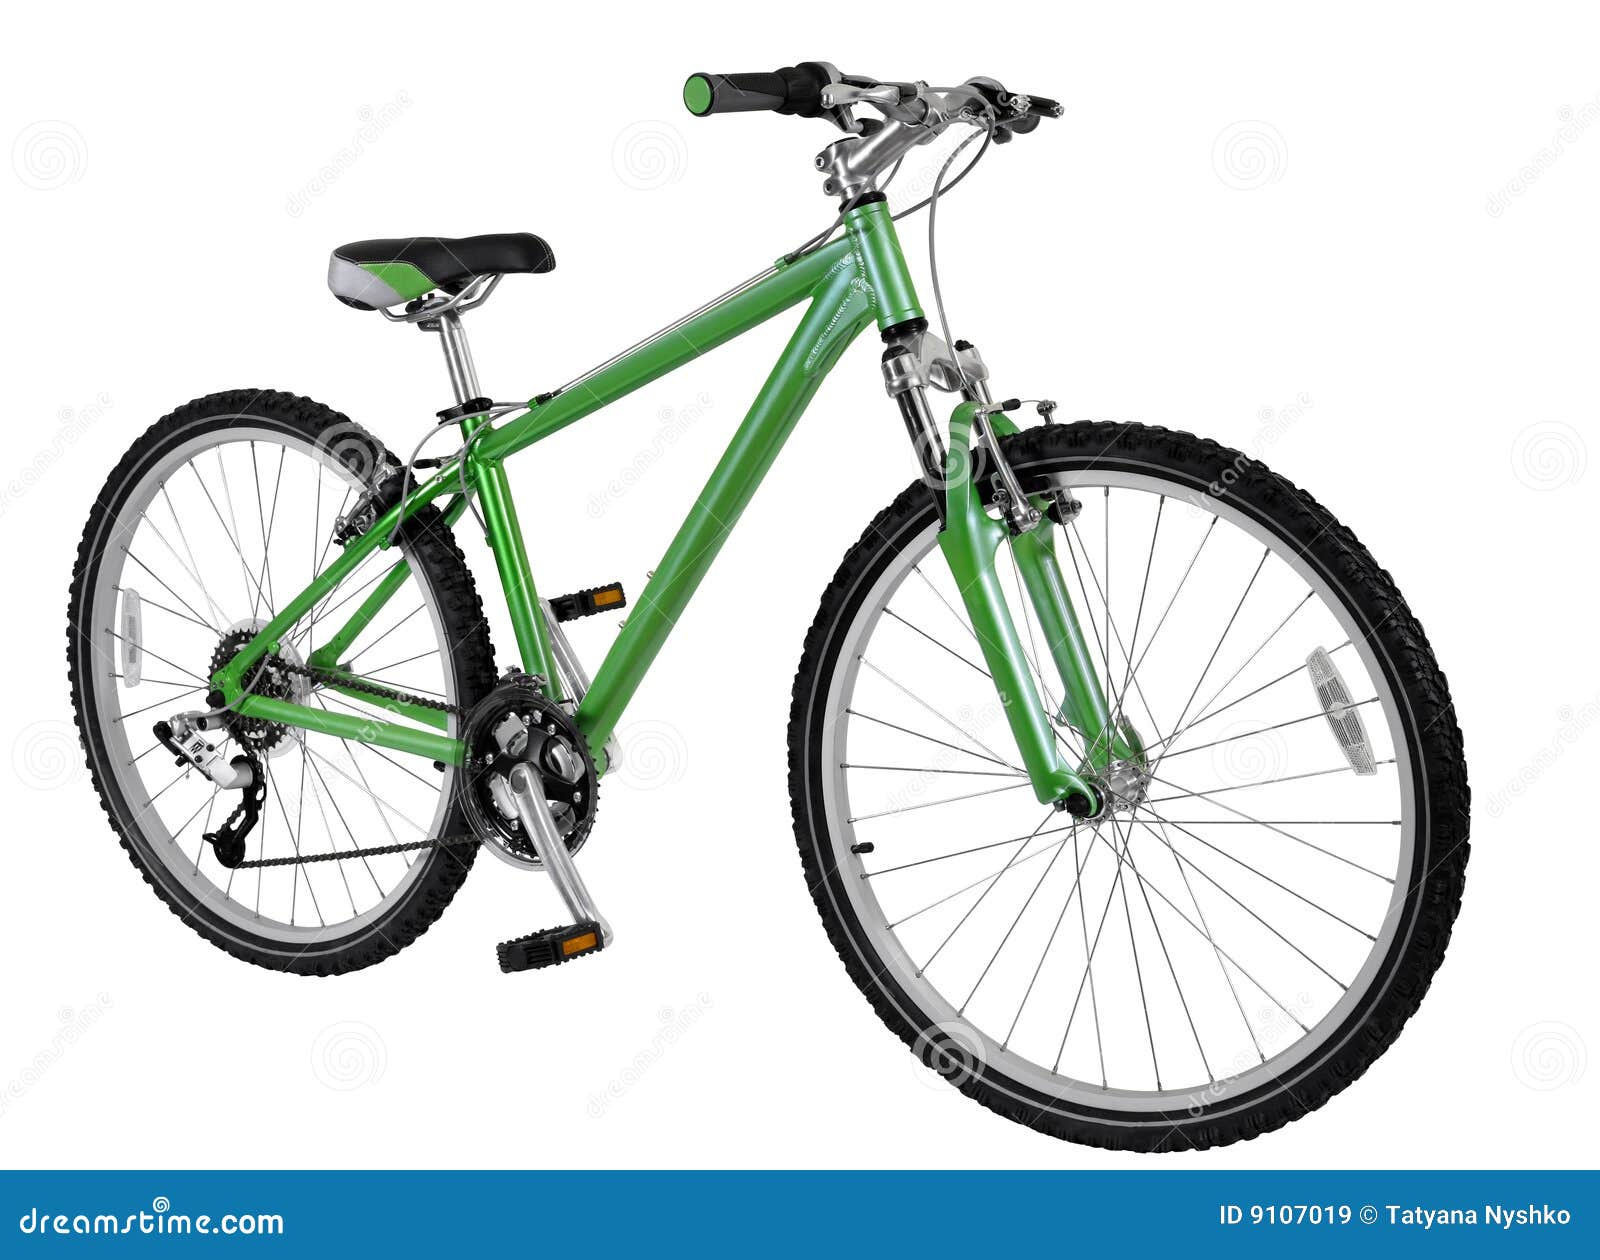 green-bike-9107019.jpg